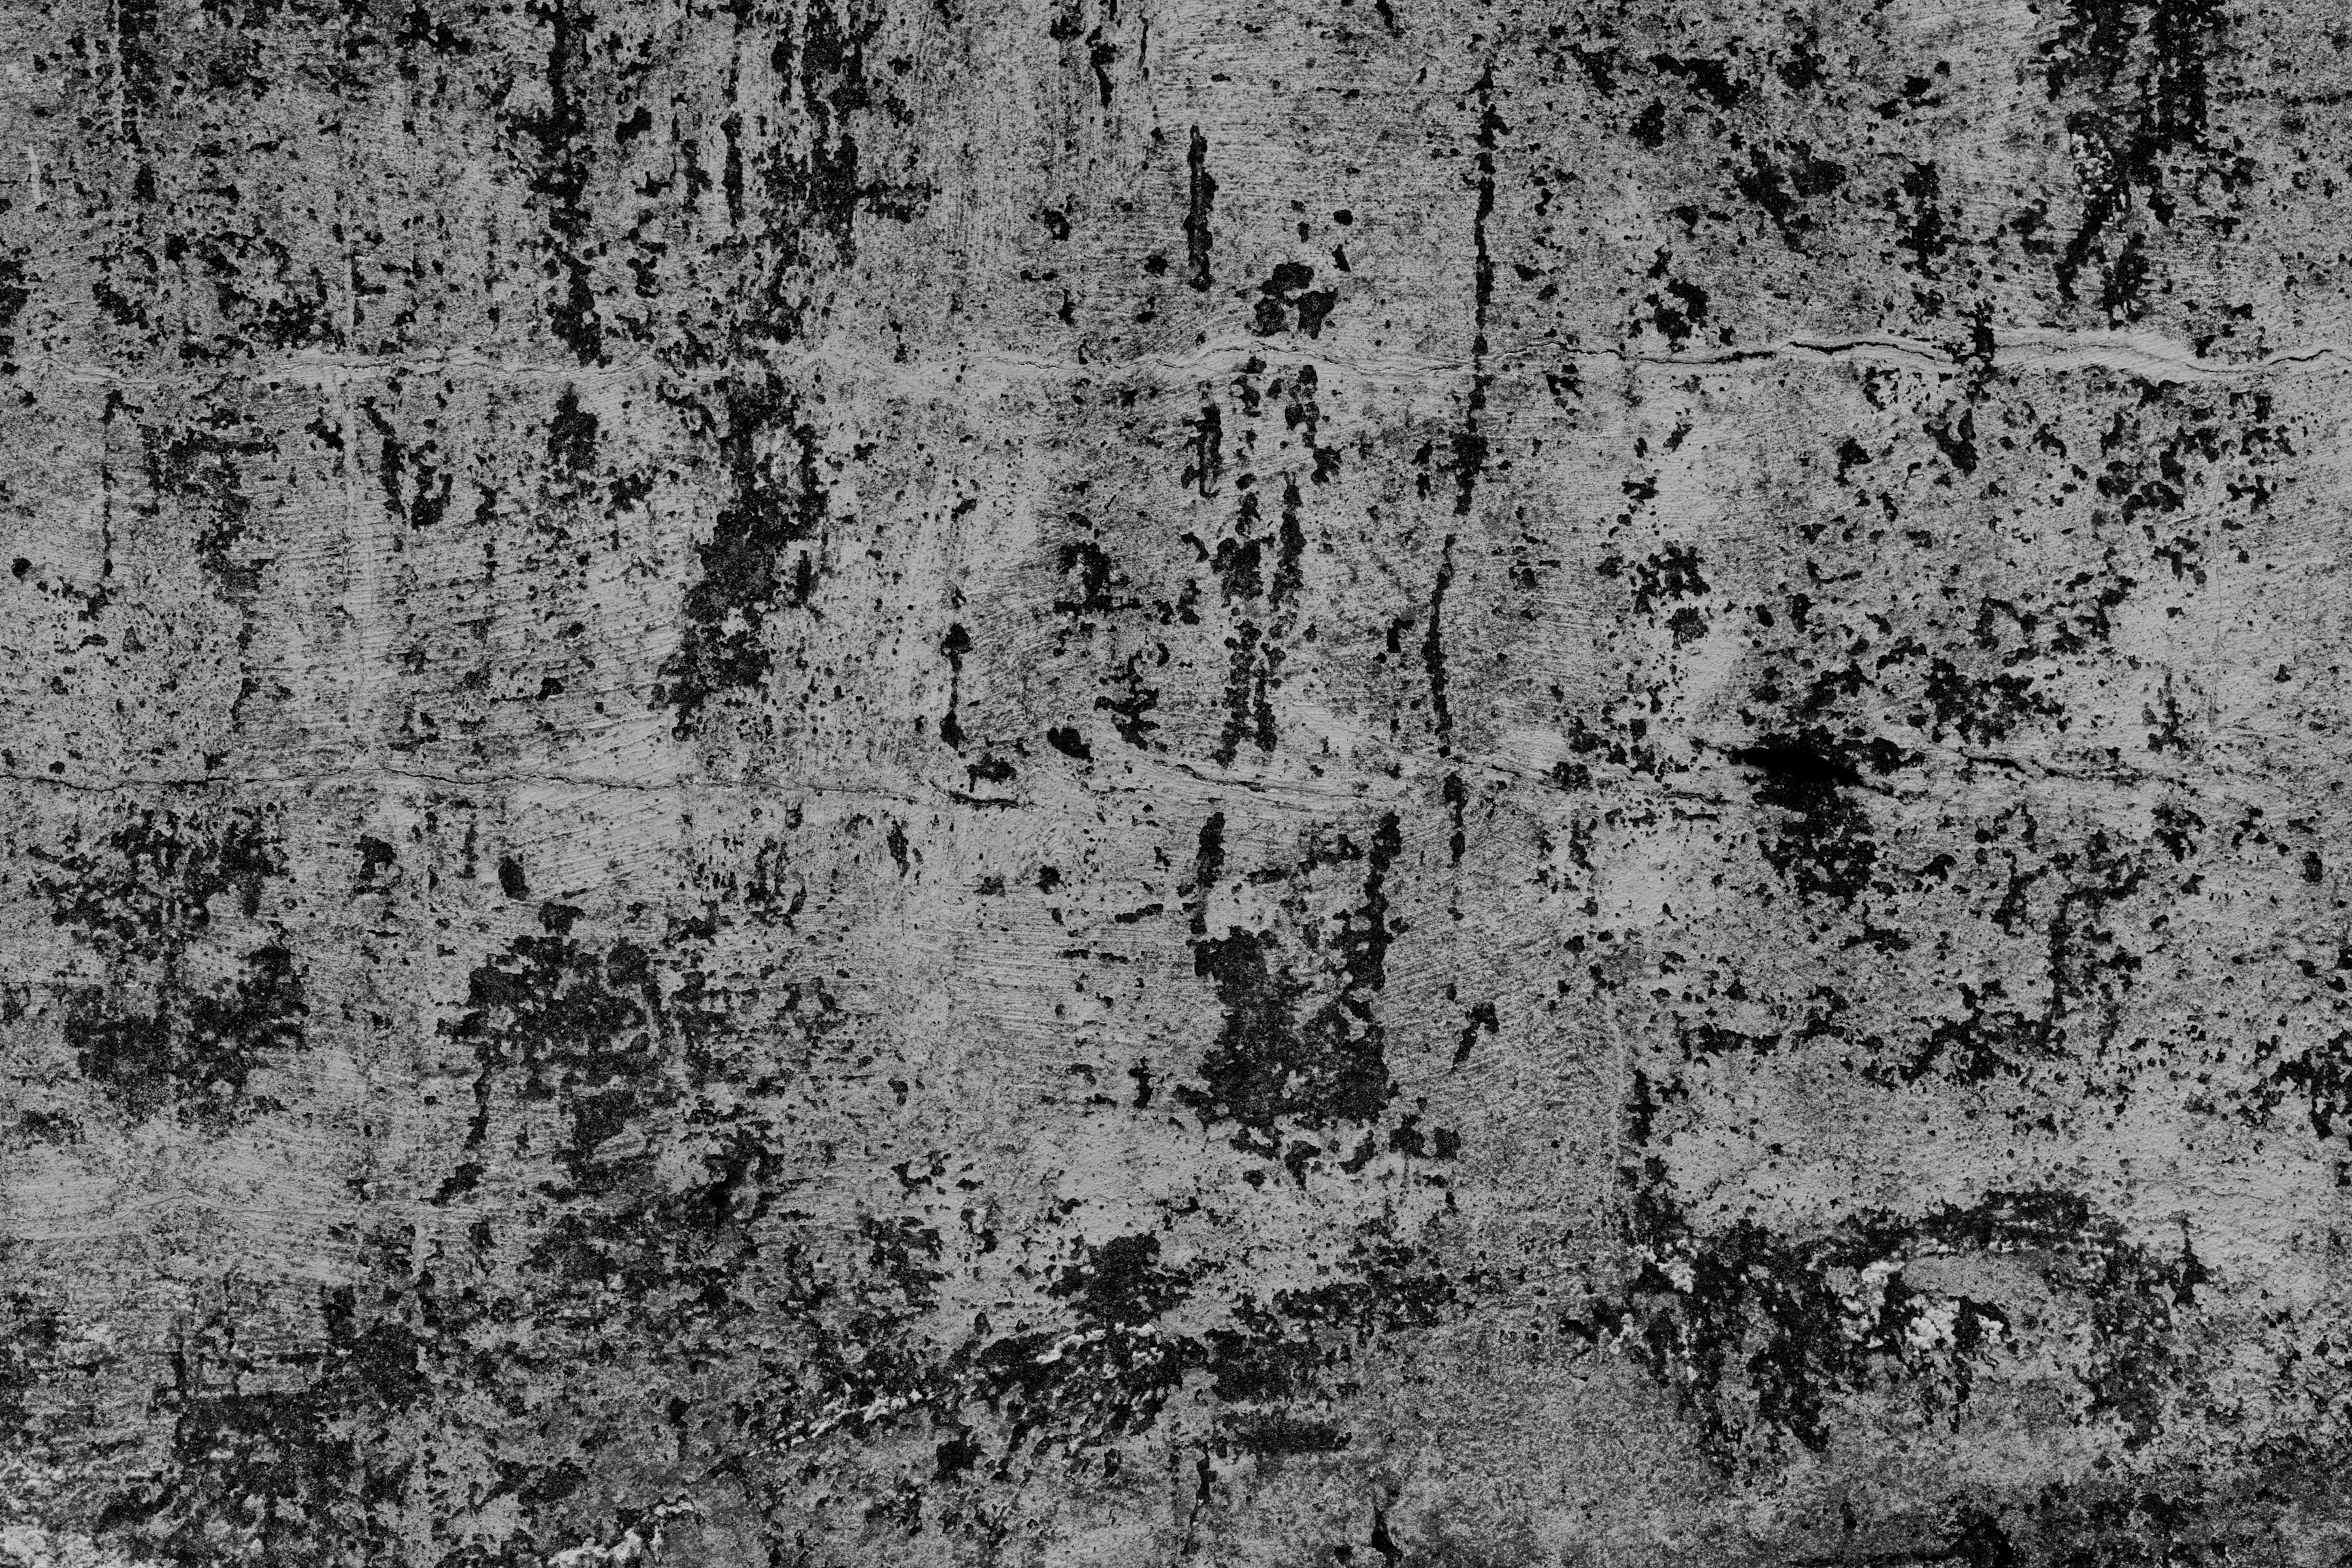 Cracked gray wall texture photo